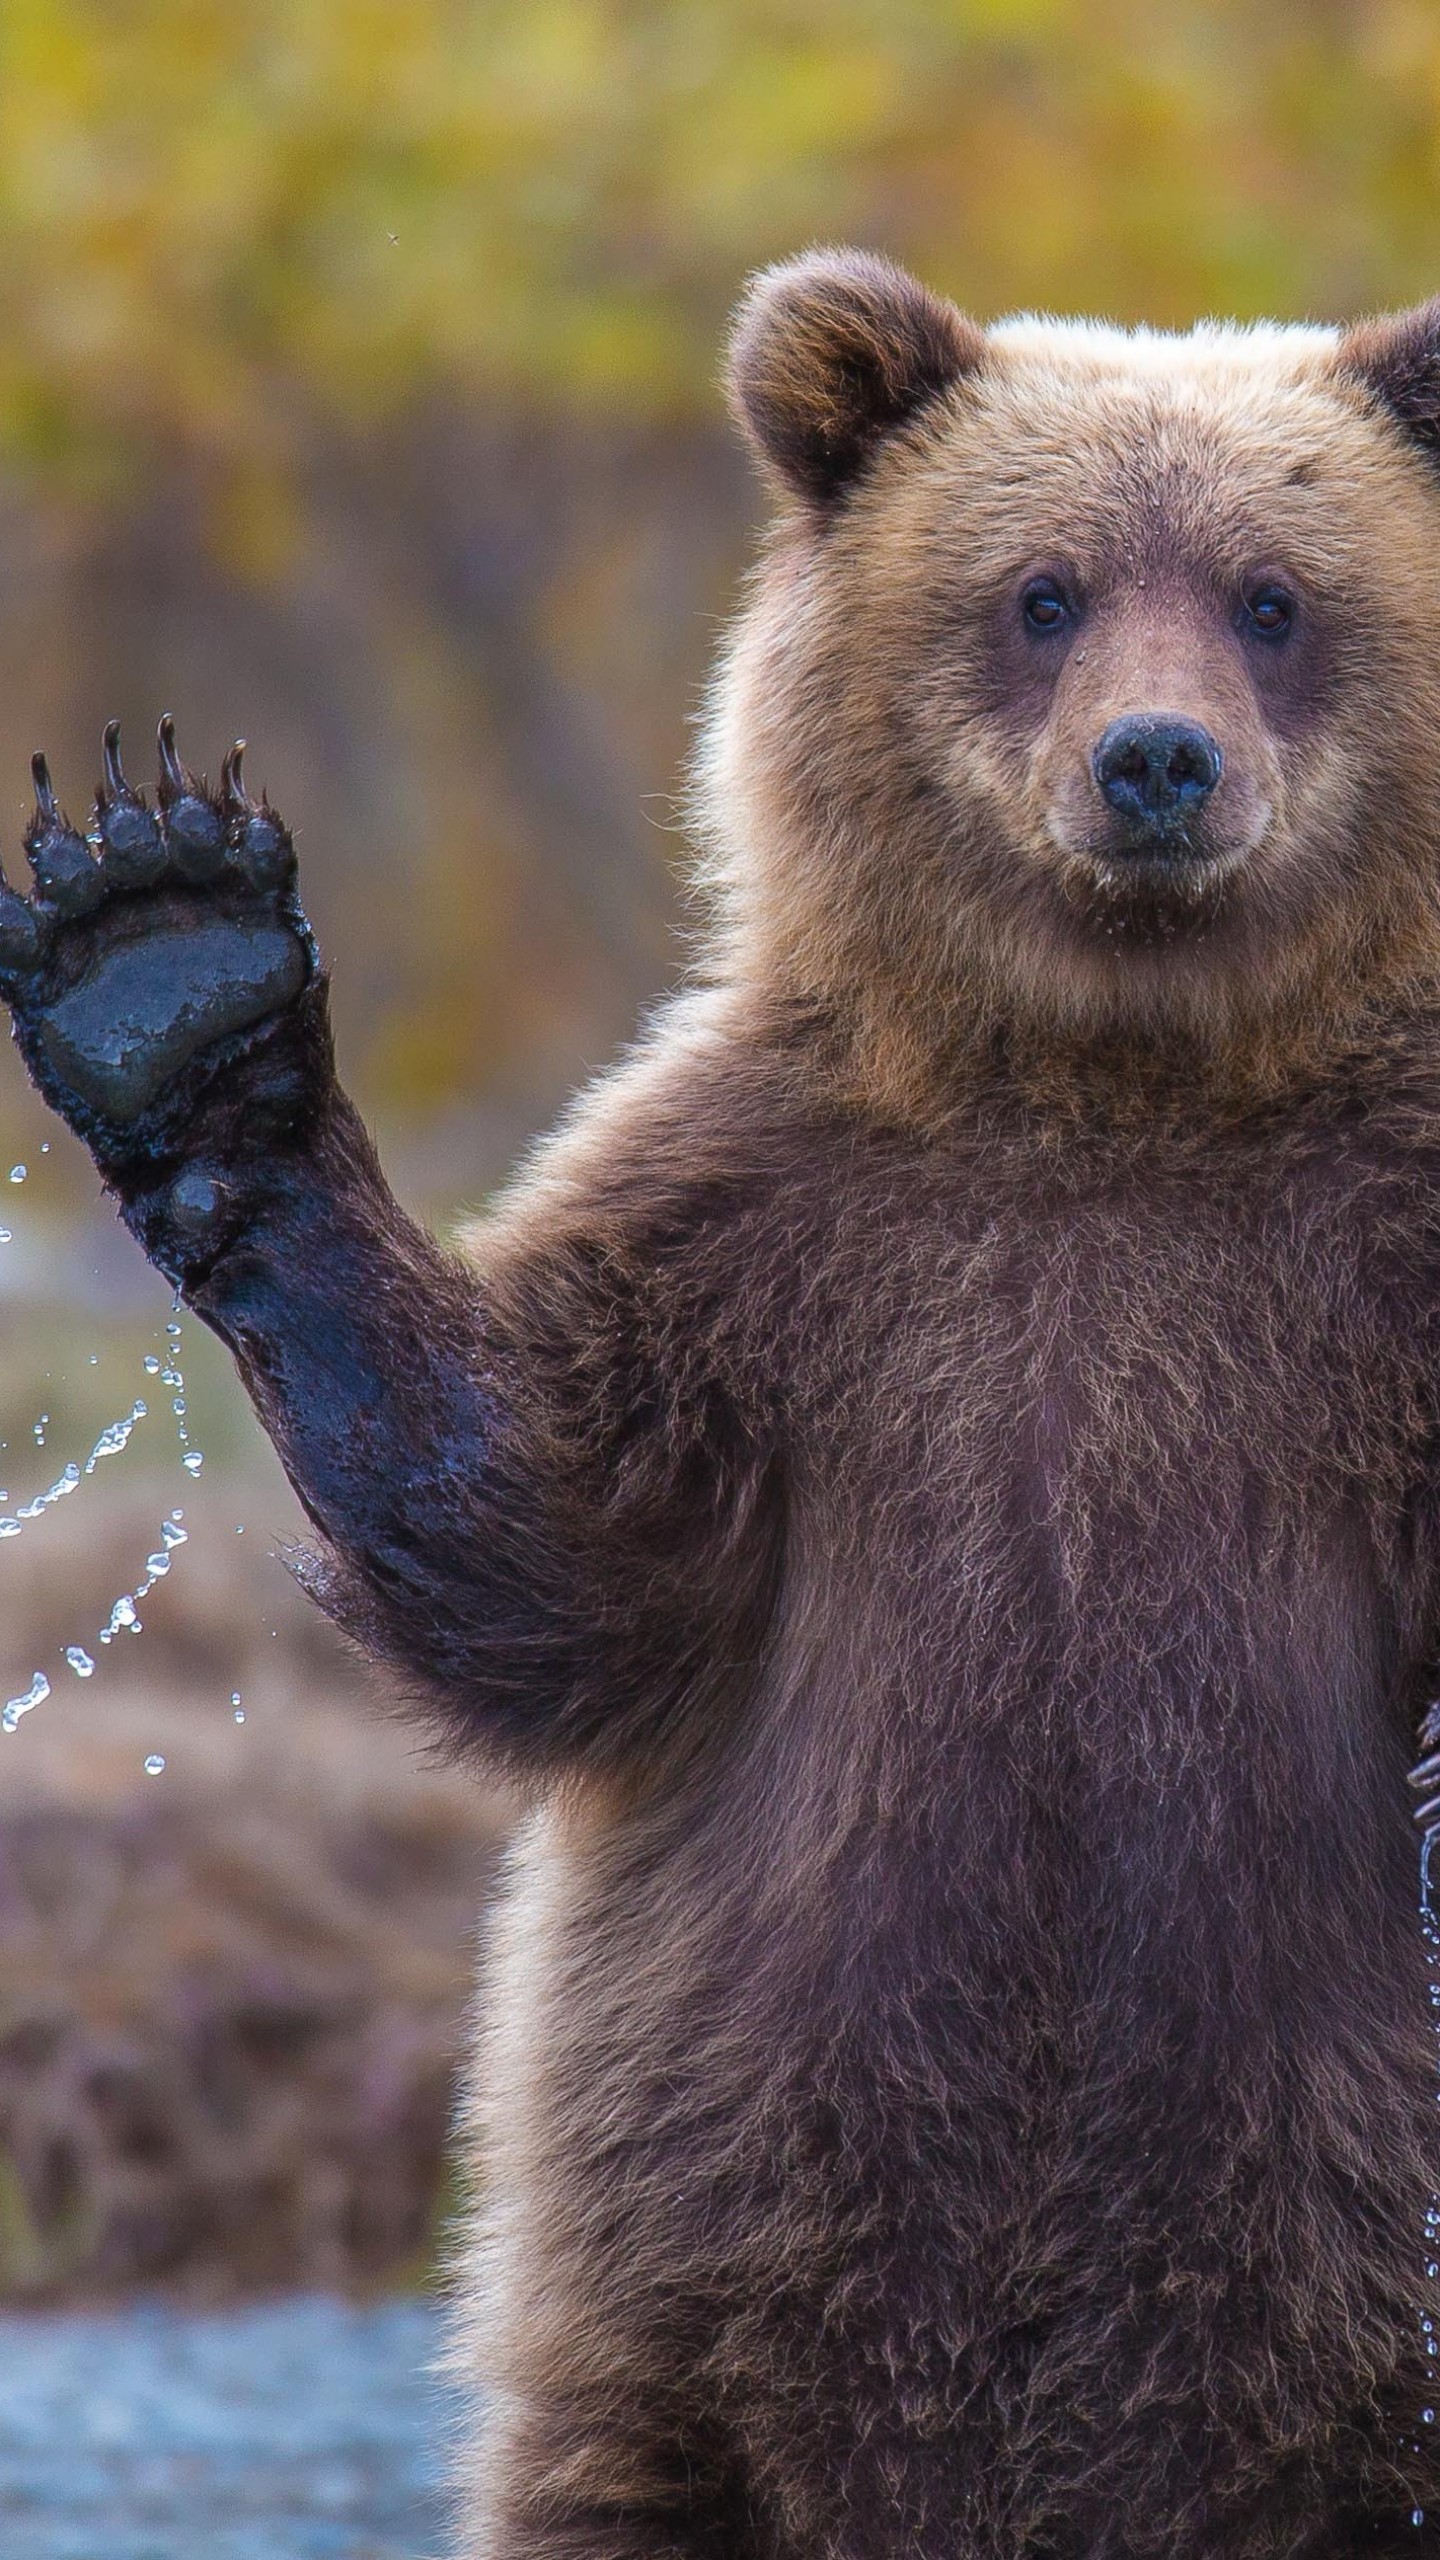 내셔널 지오그래픽 아이폰 배경 화면,갈색 곰,지상파 동물,회색 곰,곰,야생 동물